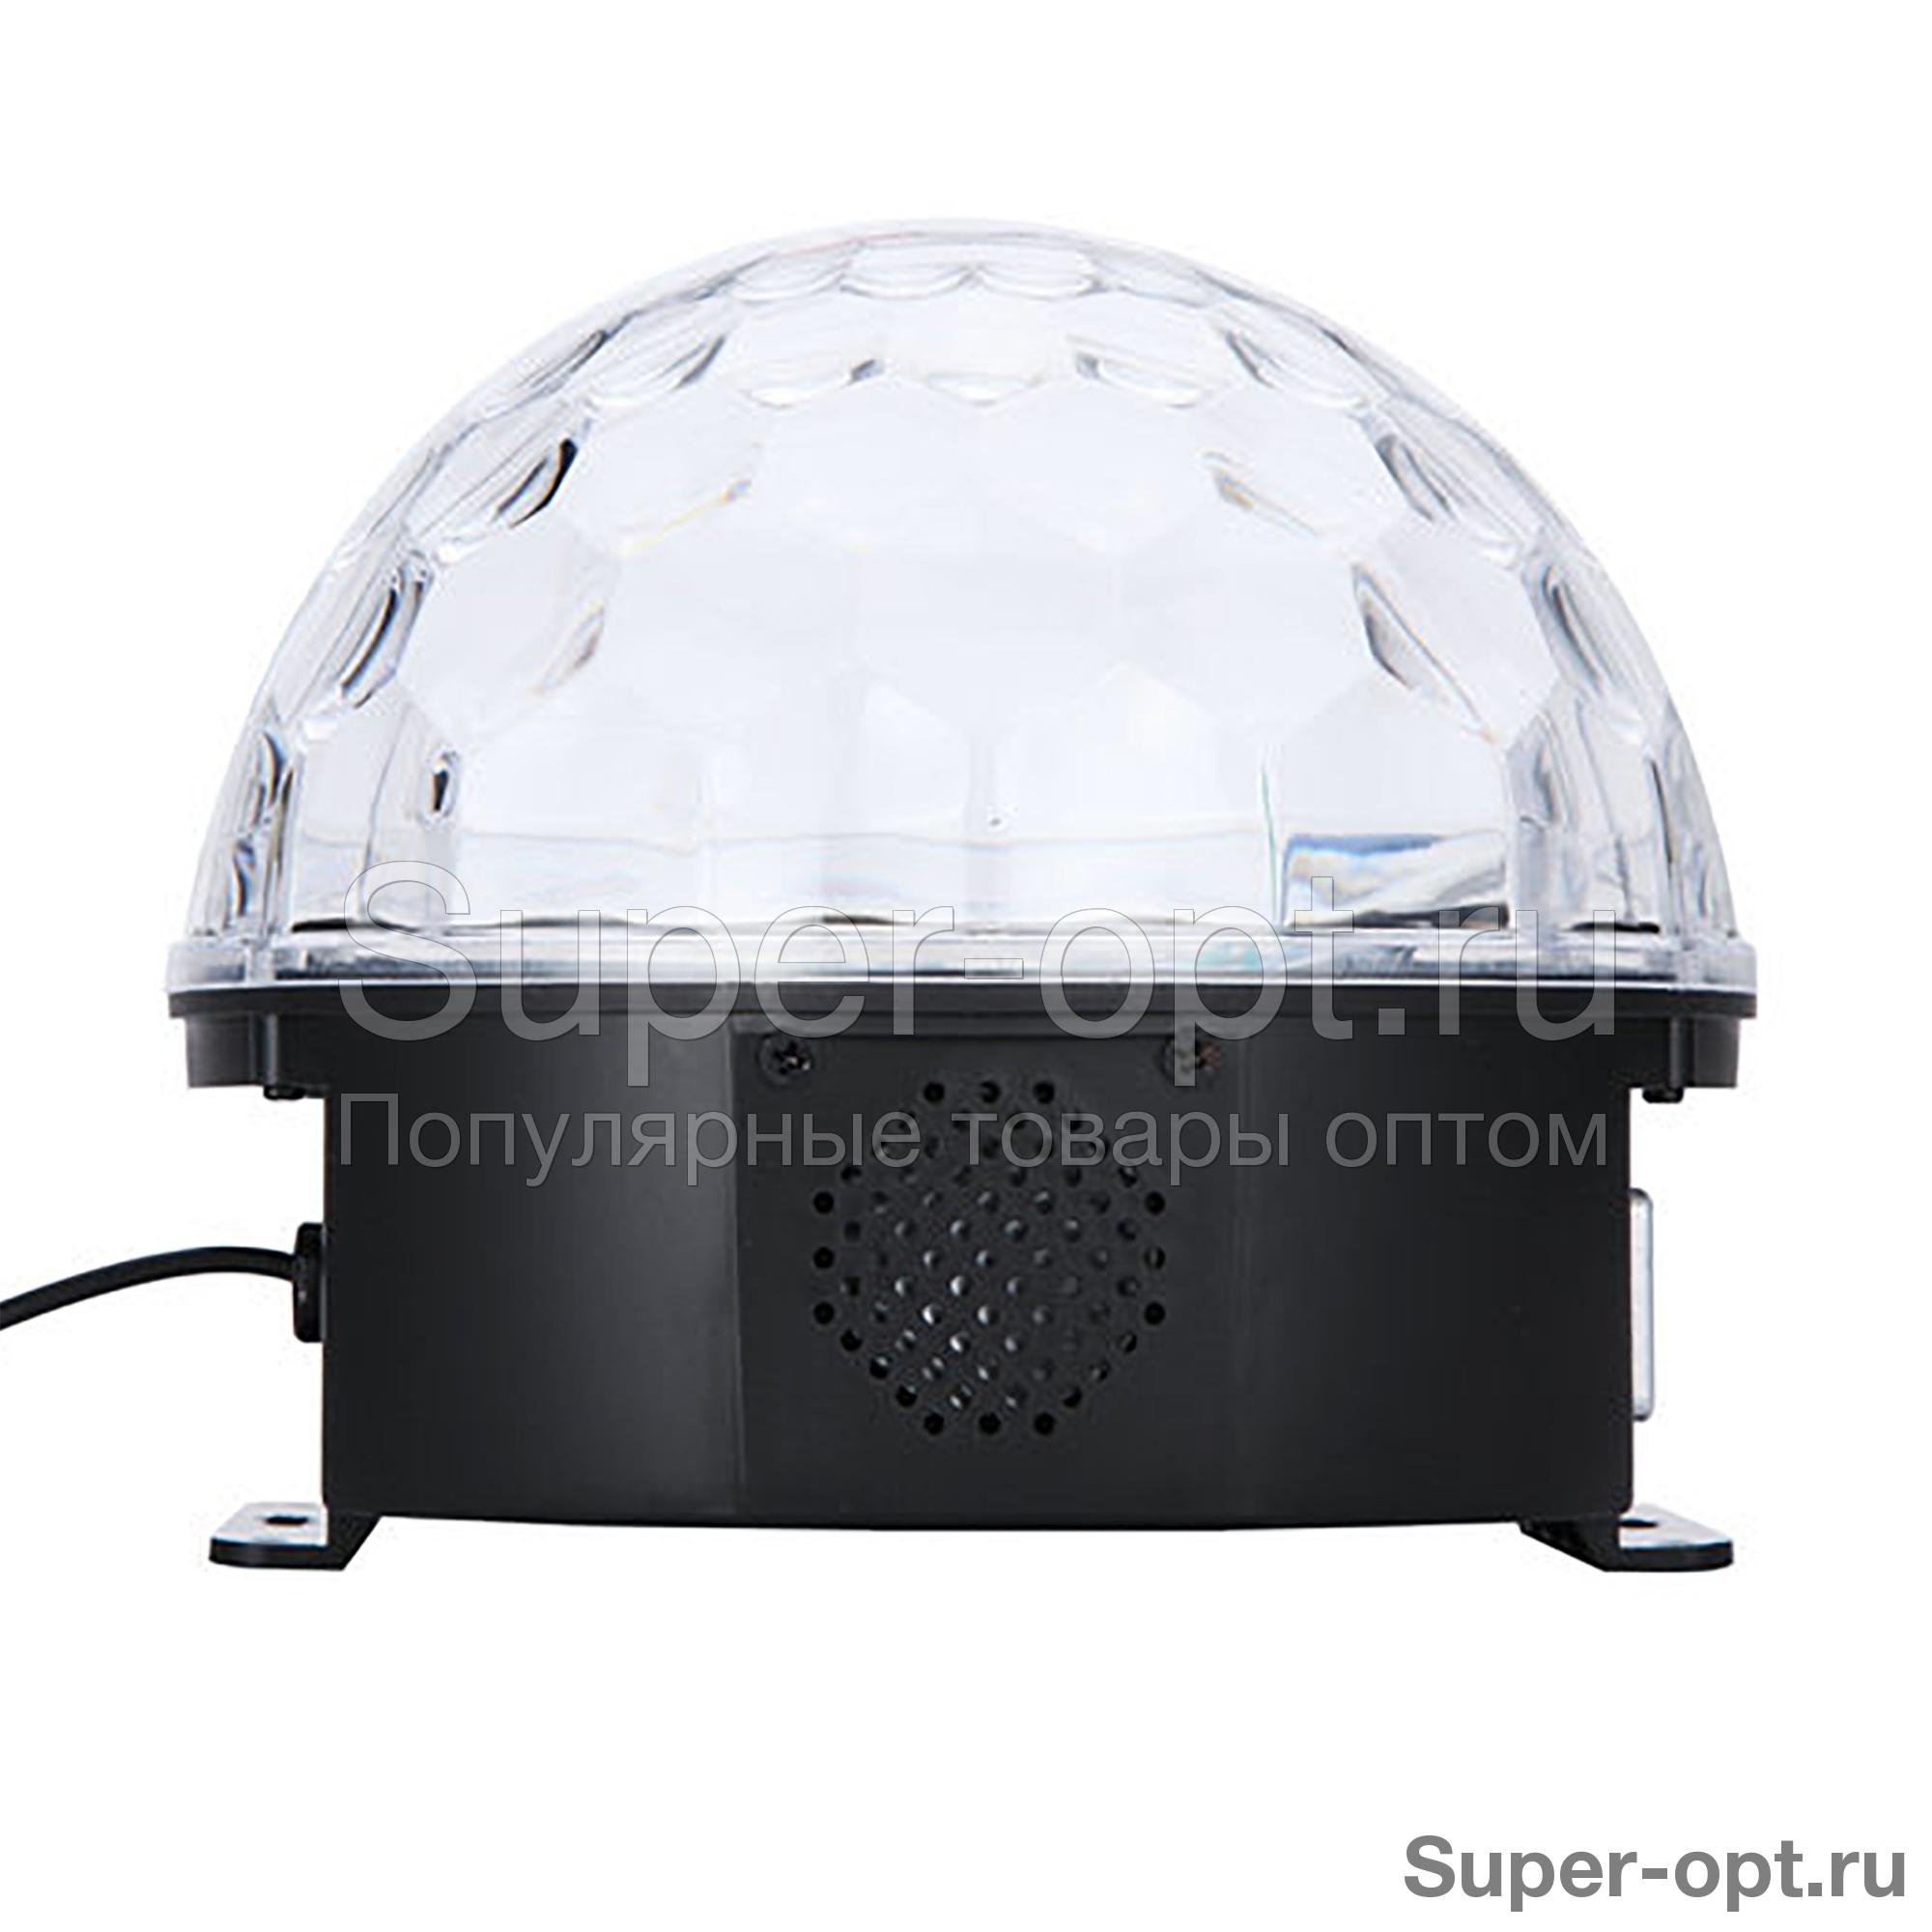 Светодиодный диско-шар с плеером LED Magic Ball Light